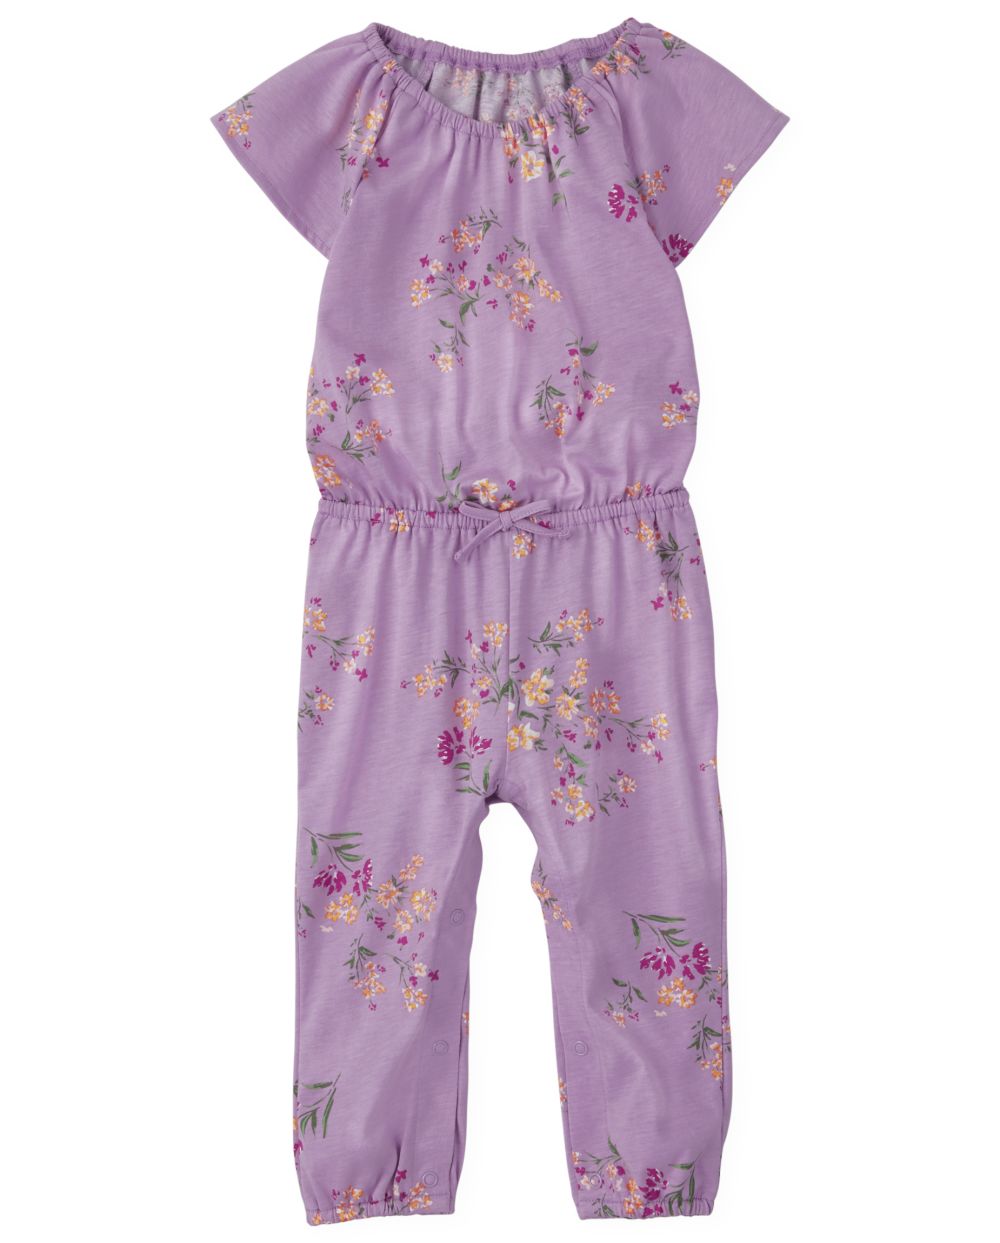 Toddler Baby Flutter Short Sleeves Sleeves Knit Floral Print Jumpsuit